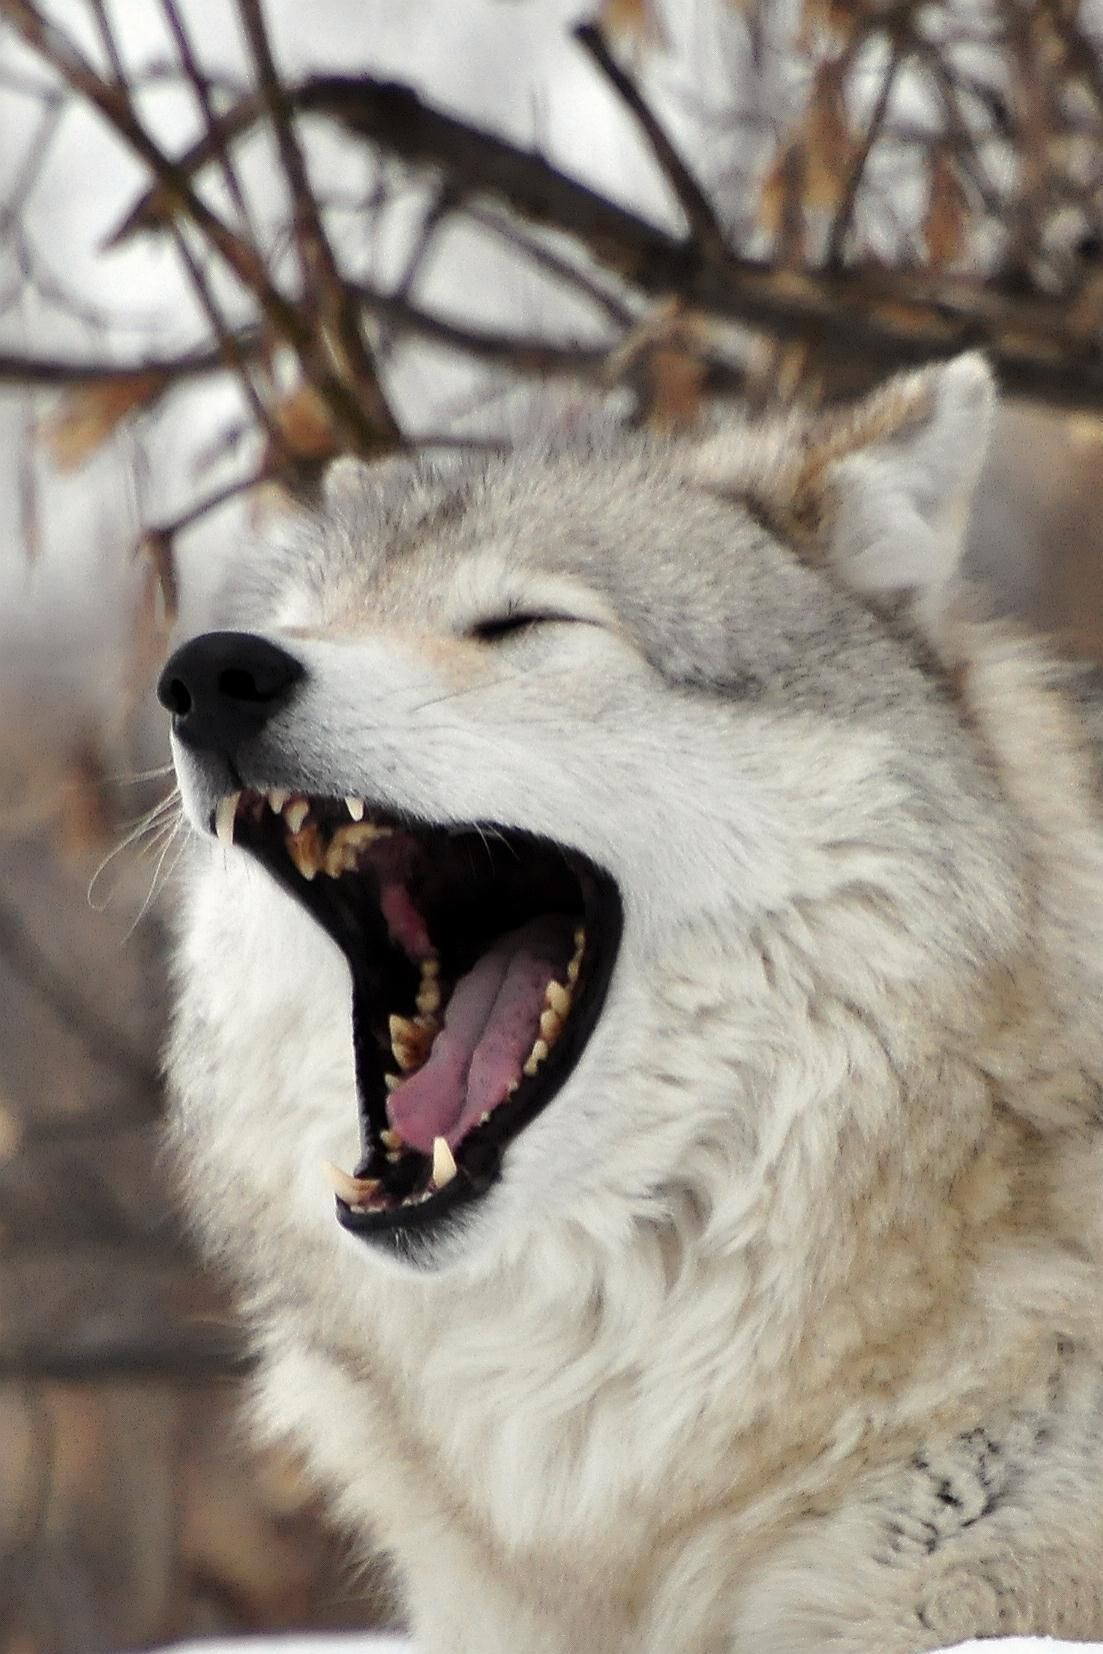 Злой оскал. Оскал волка. Волкособ оскал. Белый волк скалится. Злой волк.